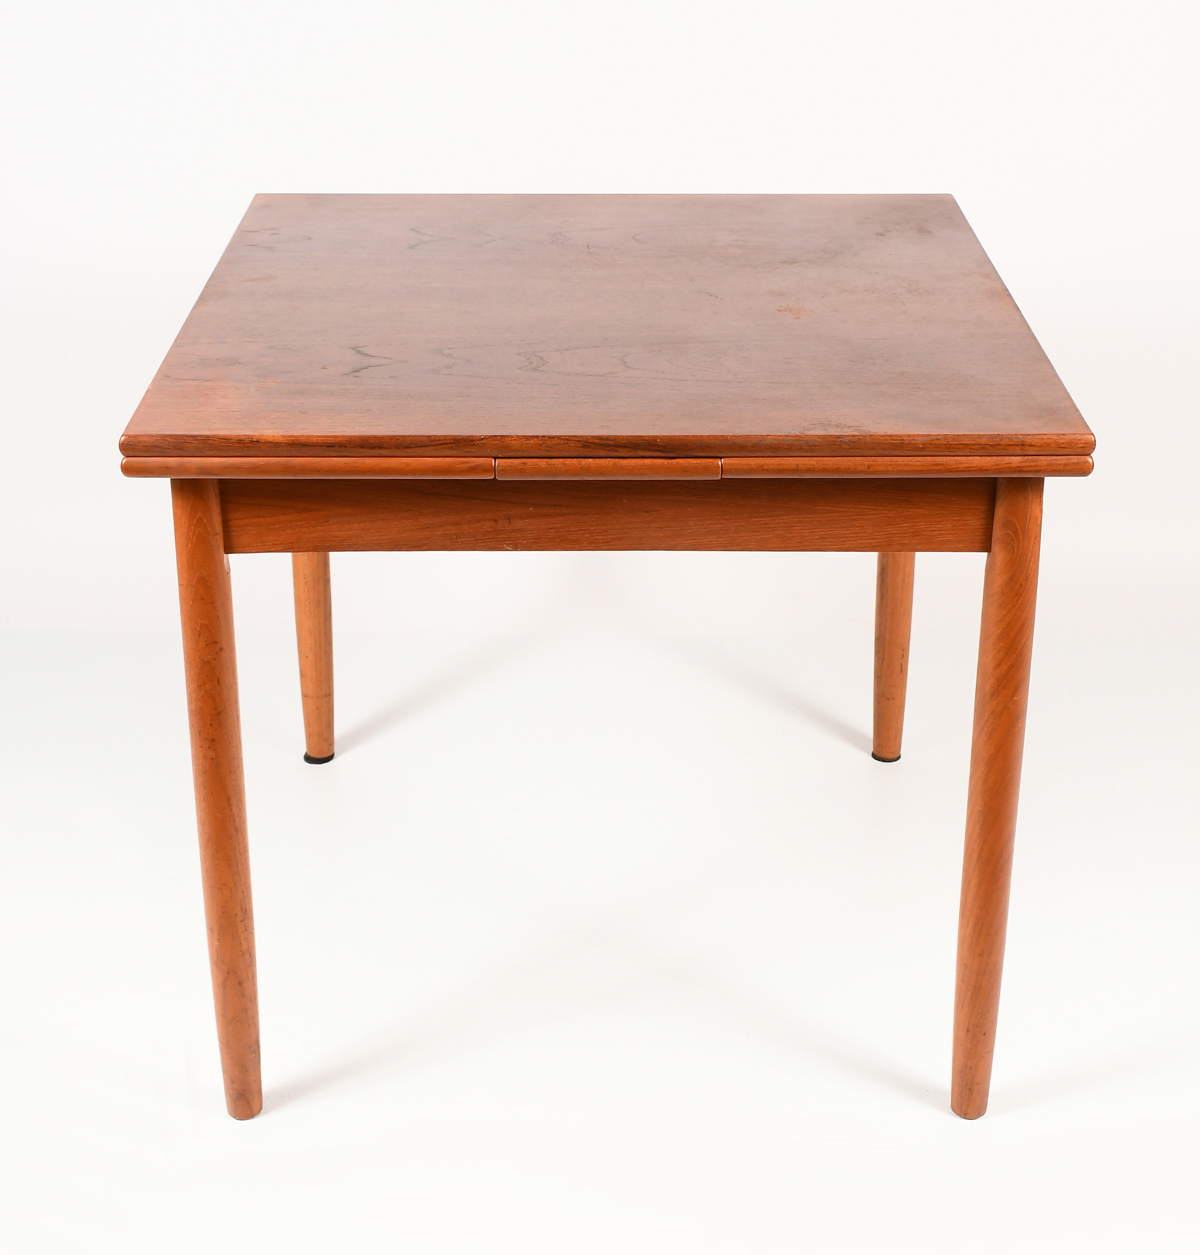 DANISH TEAK PUB TABLE: A square,